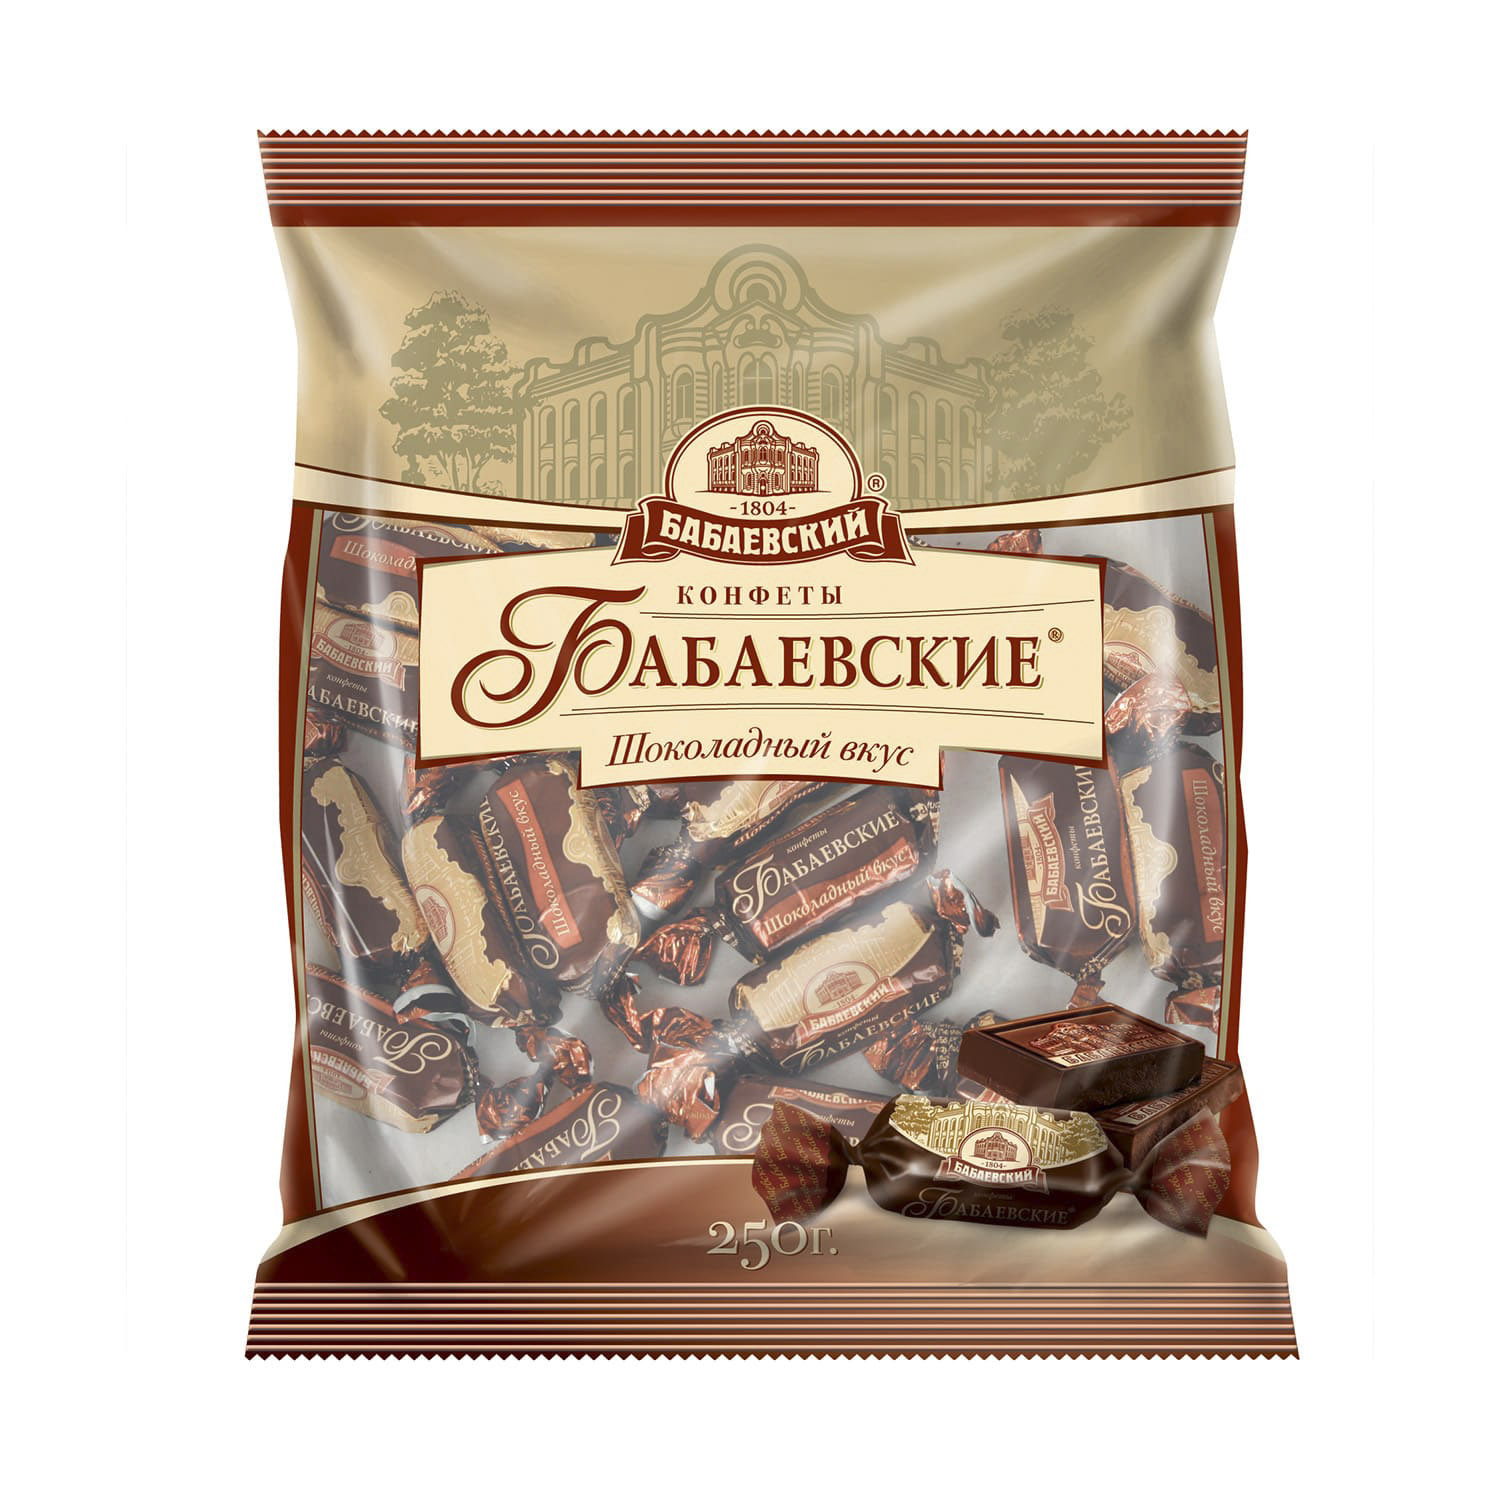 Конфеты Бабаевские шоколадный вкус 250 г конфеты объединённые кондитеры бабаевские ореховая роща кг